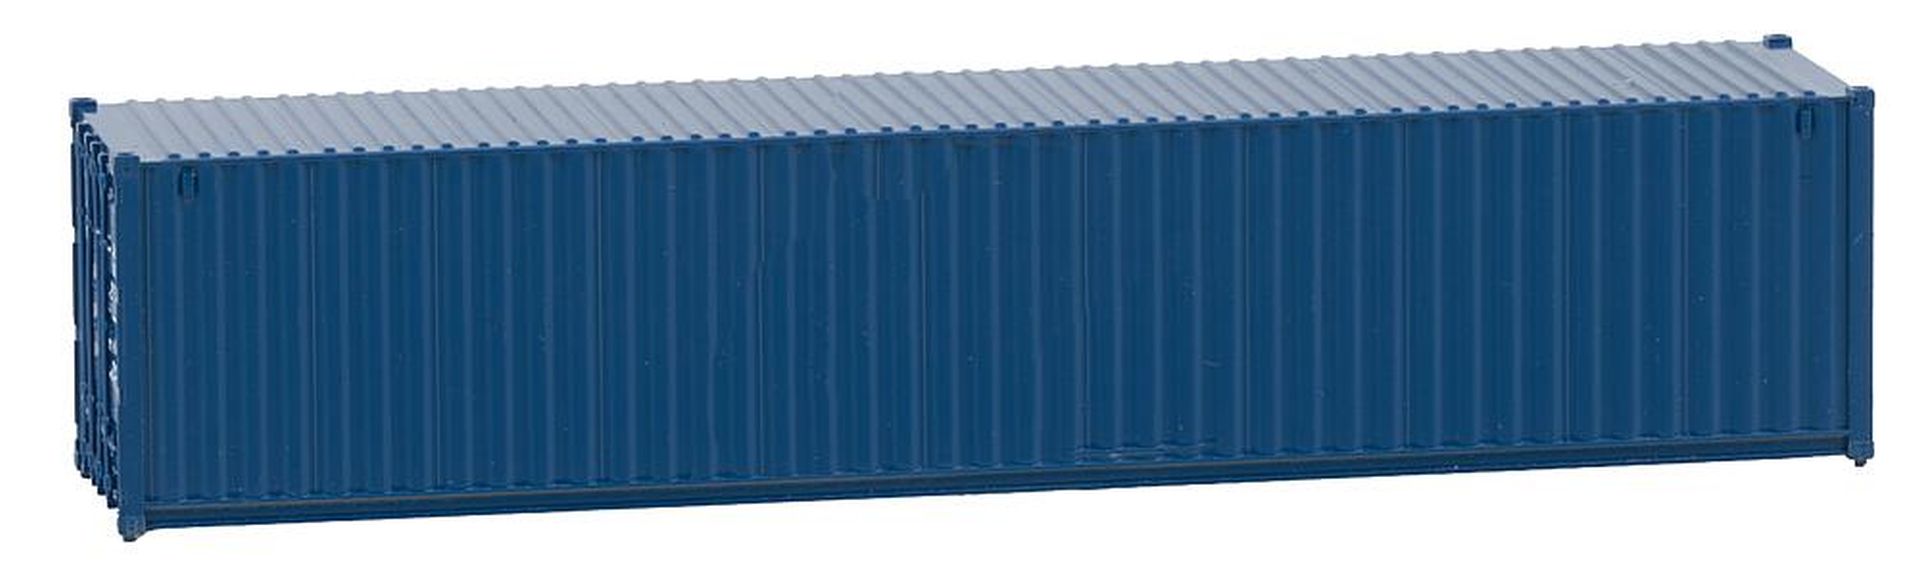 Faller 182102 - 40' Container, blau